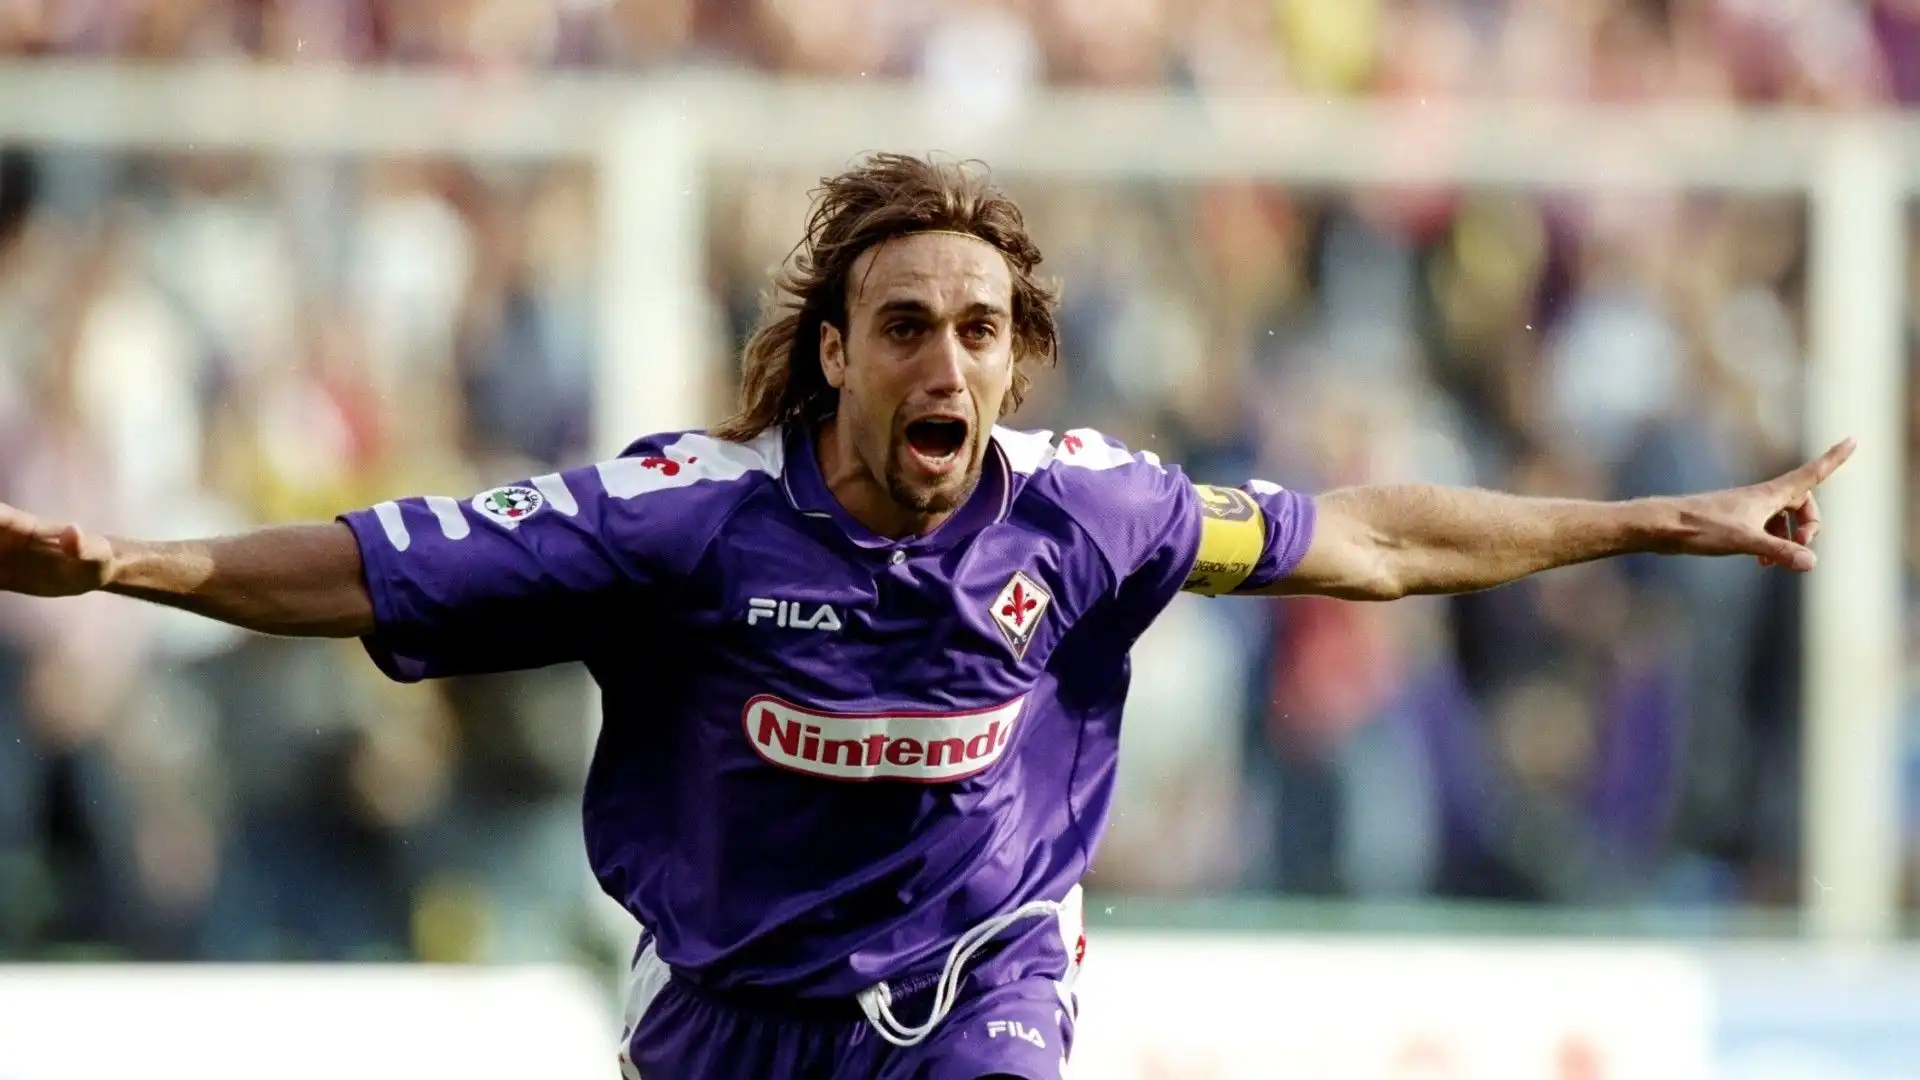 Gabriel Omar Batistuta. Il bomber argentino ha giocato alla Fiorentina dal 1991 al 2000: 269 partite e 168 gol. E' uno dei più grandi idoli dei tifosi fiorentini